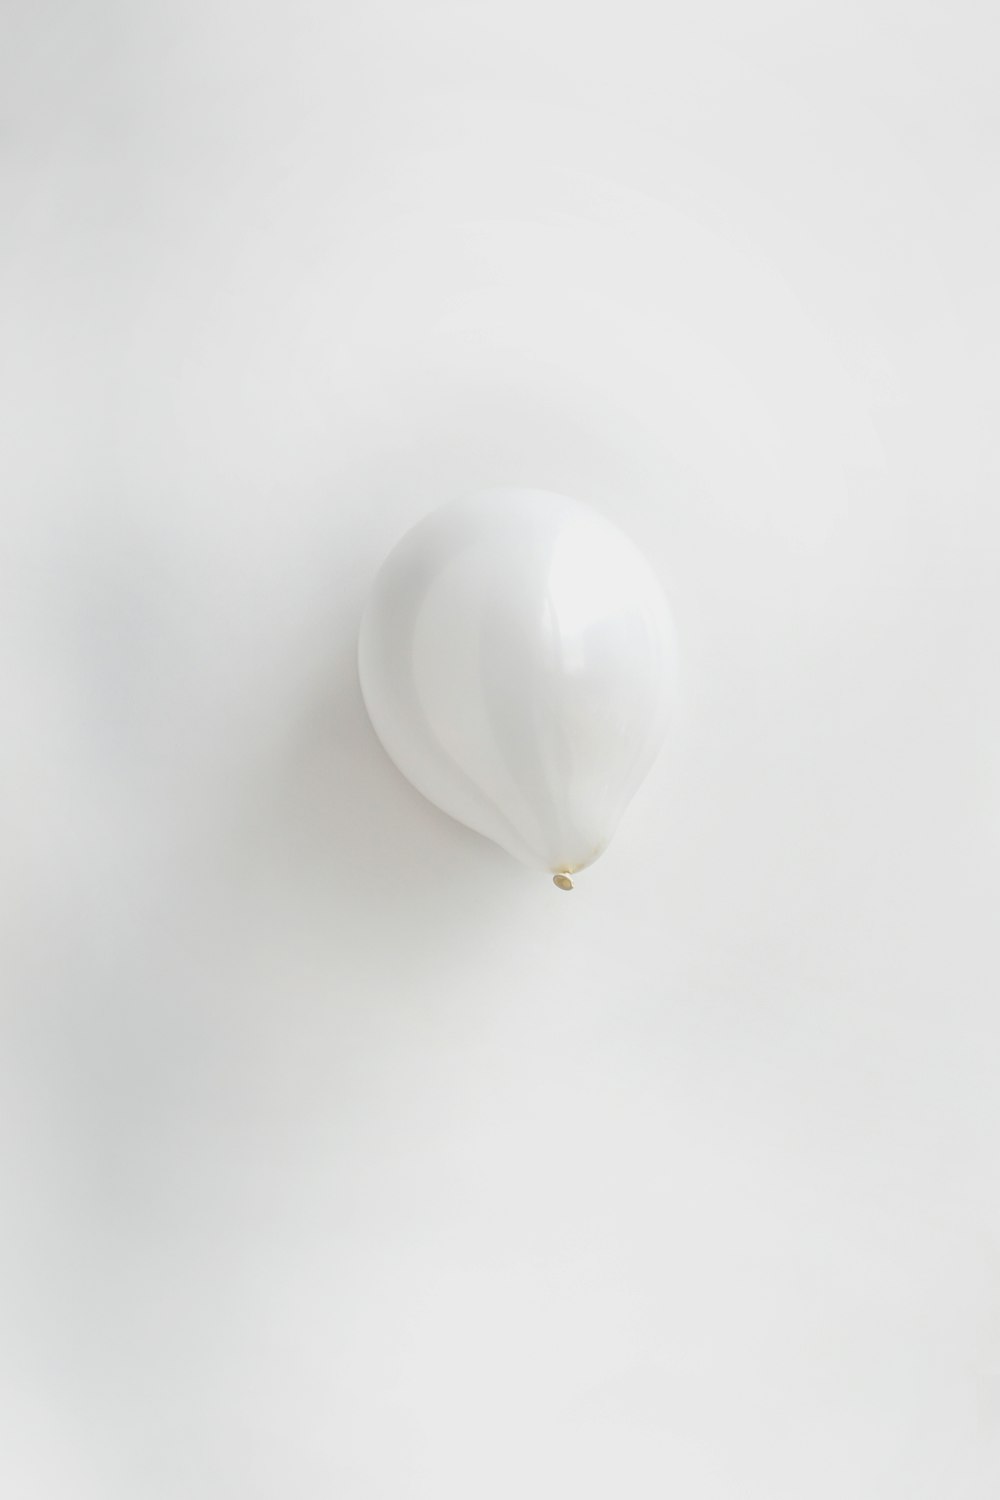 weißer Luftballon